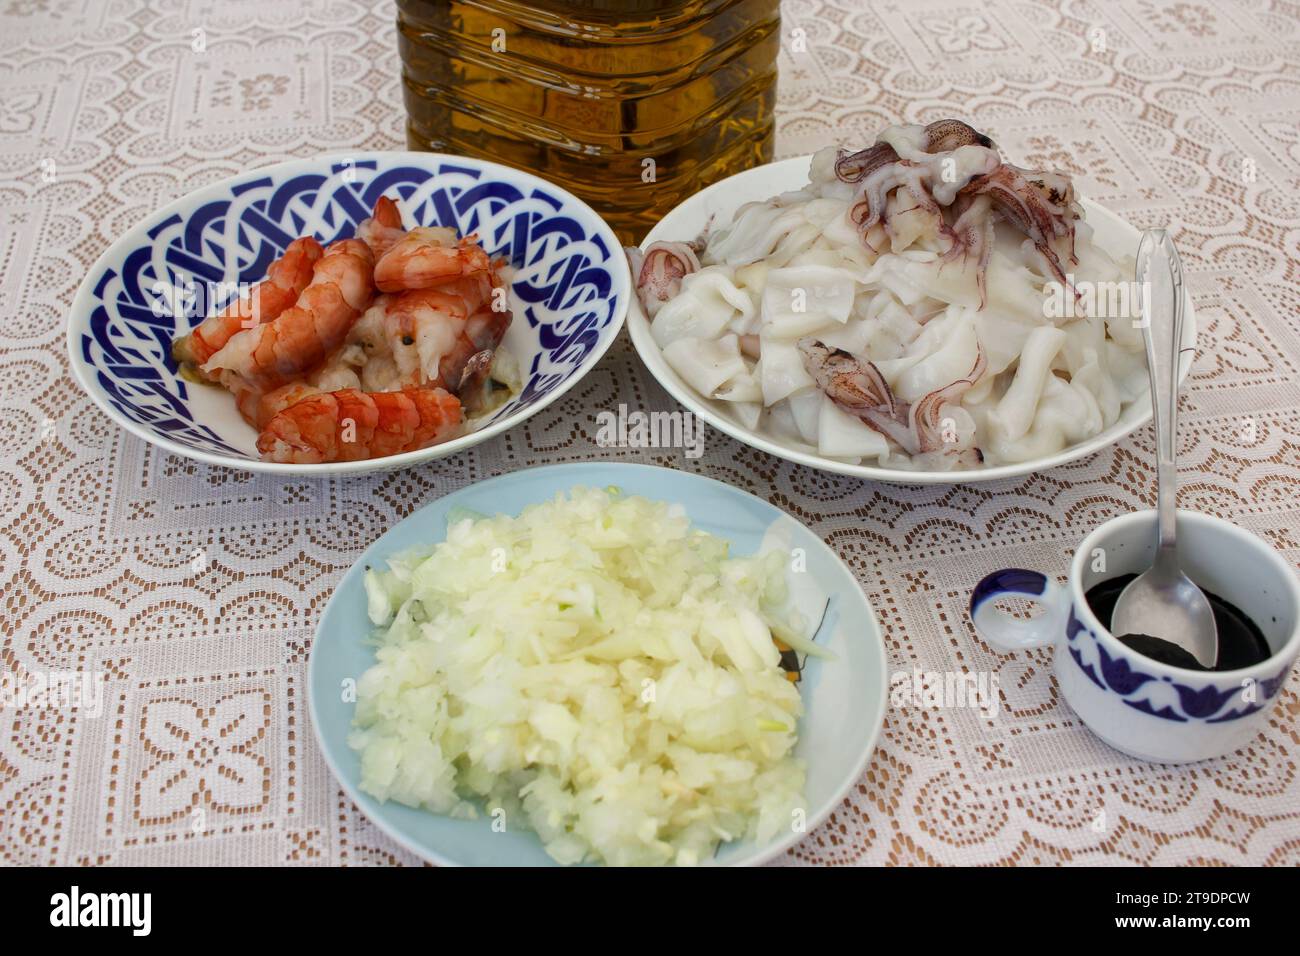 cipolla, inchiostro, calamari, gamberetti e olio d'oliva sono alcuni degli ingredienti per cucinare un delizioso riso nero a casa Foto Stock